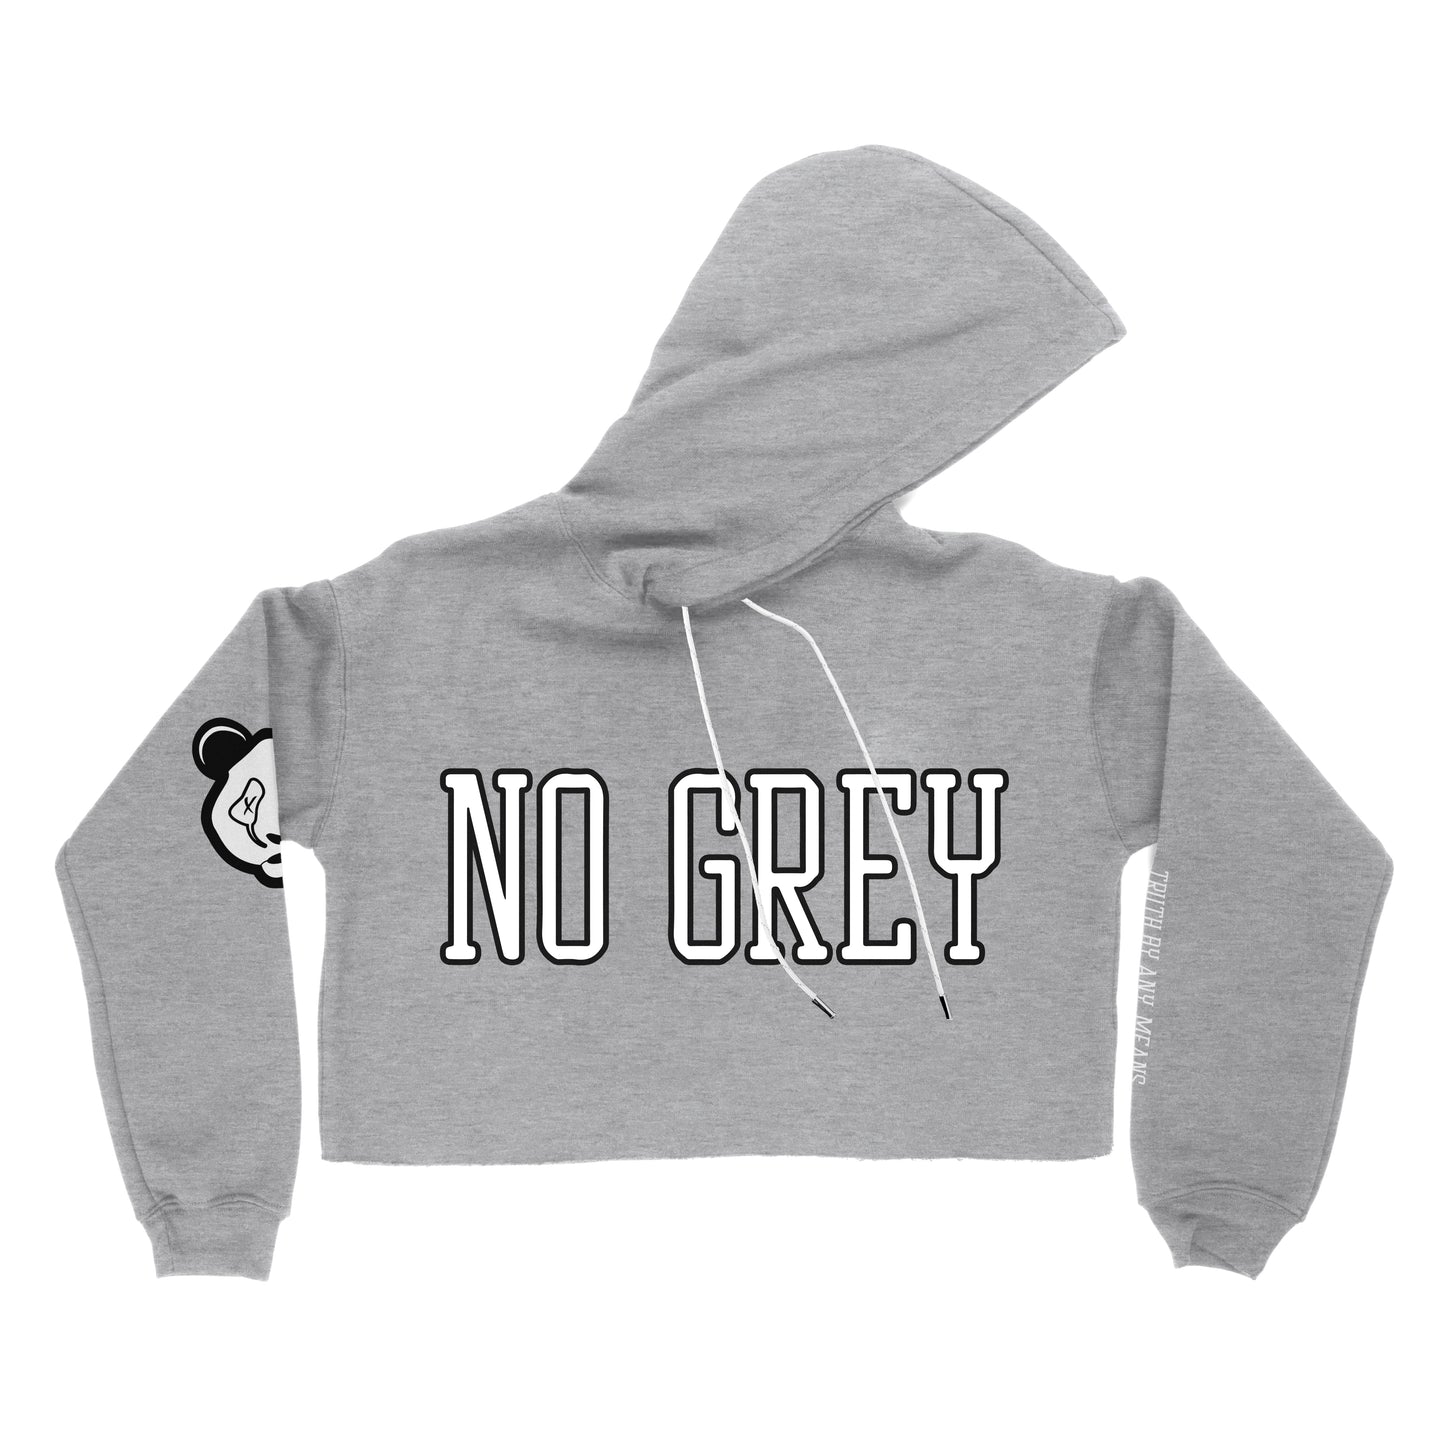 No Grey - Premium Crop Top Hoodie (Heather Grey)